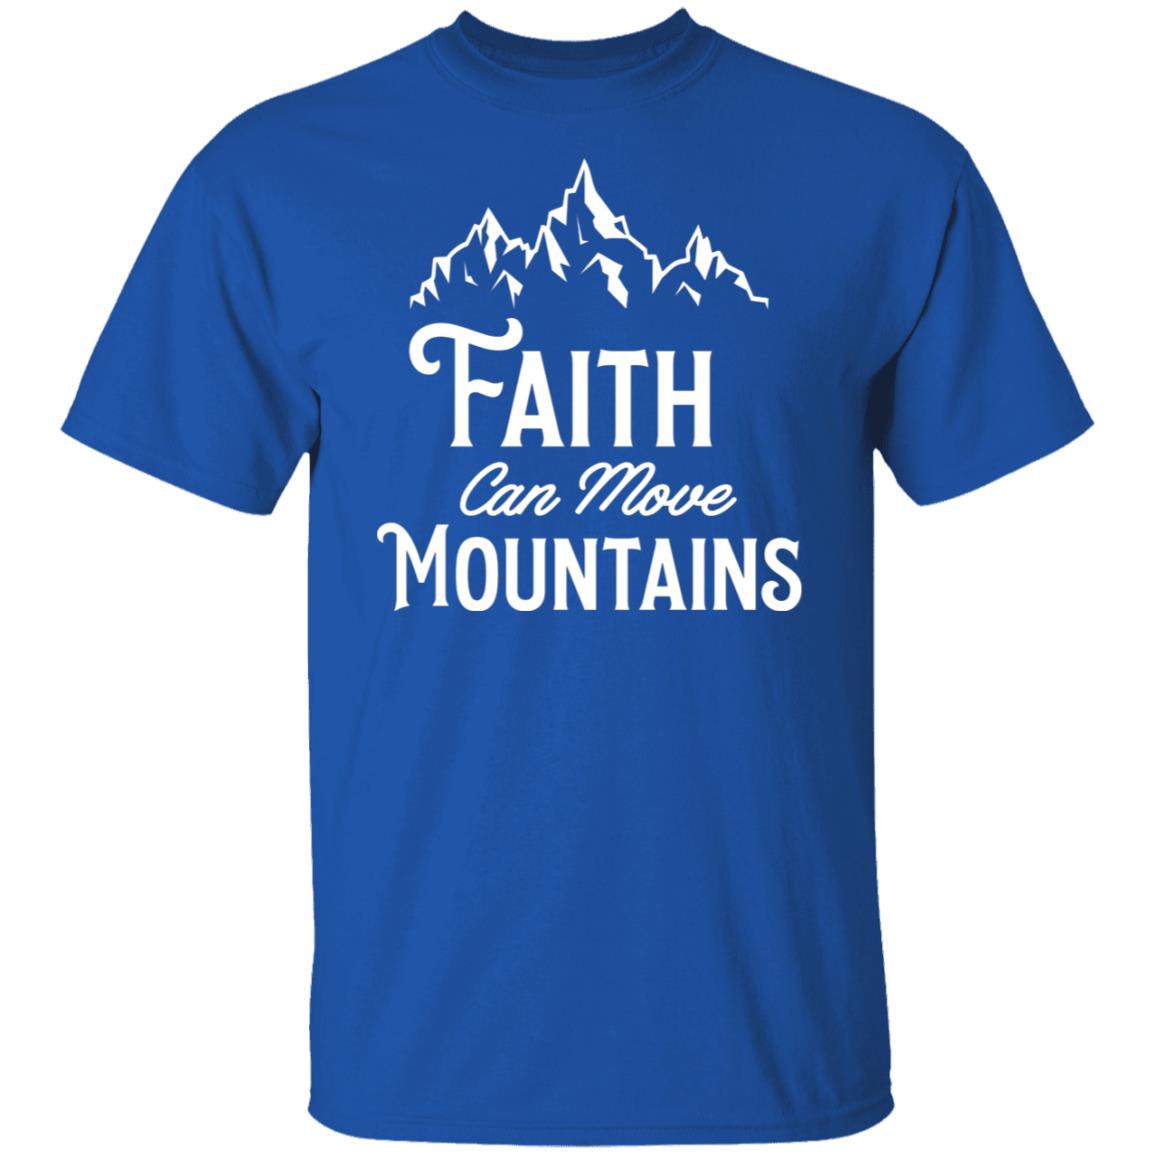 Faith can move Mountains tshirt